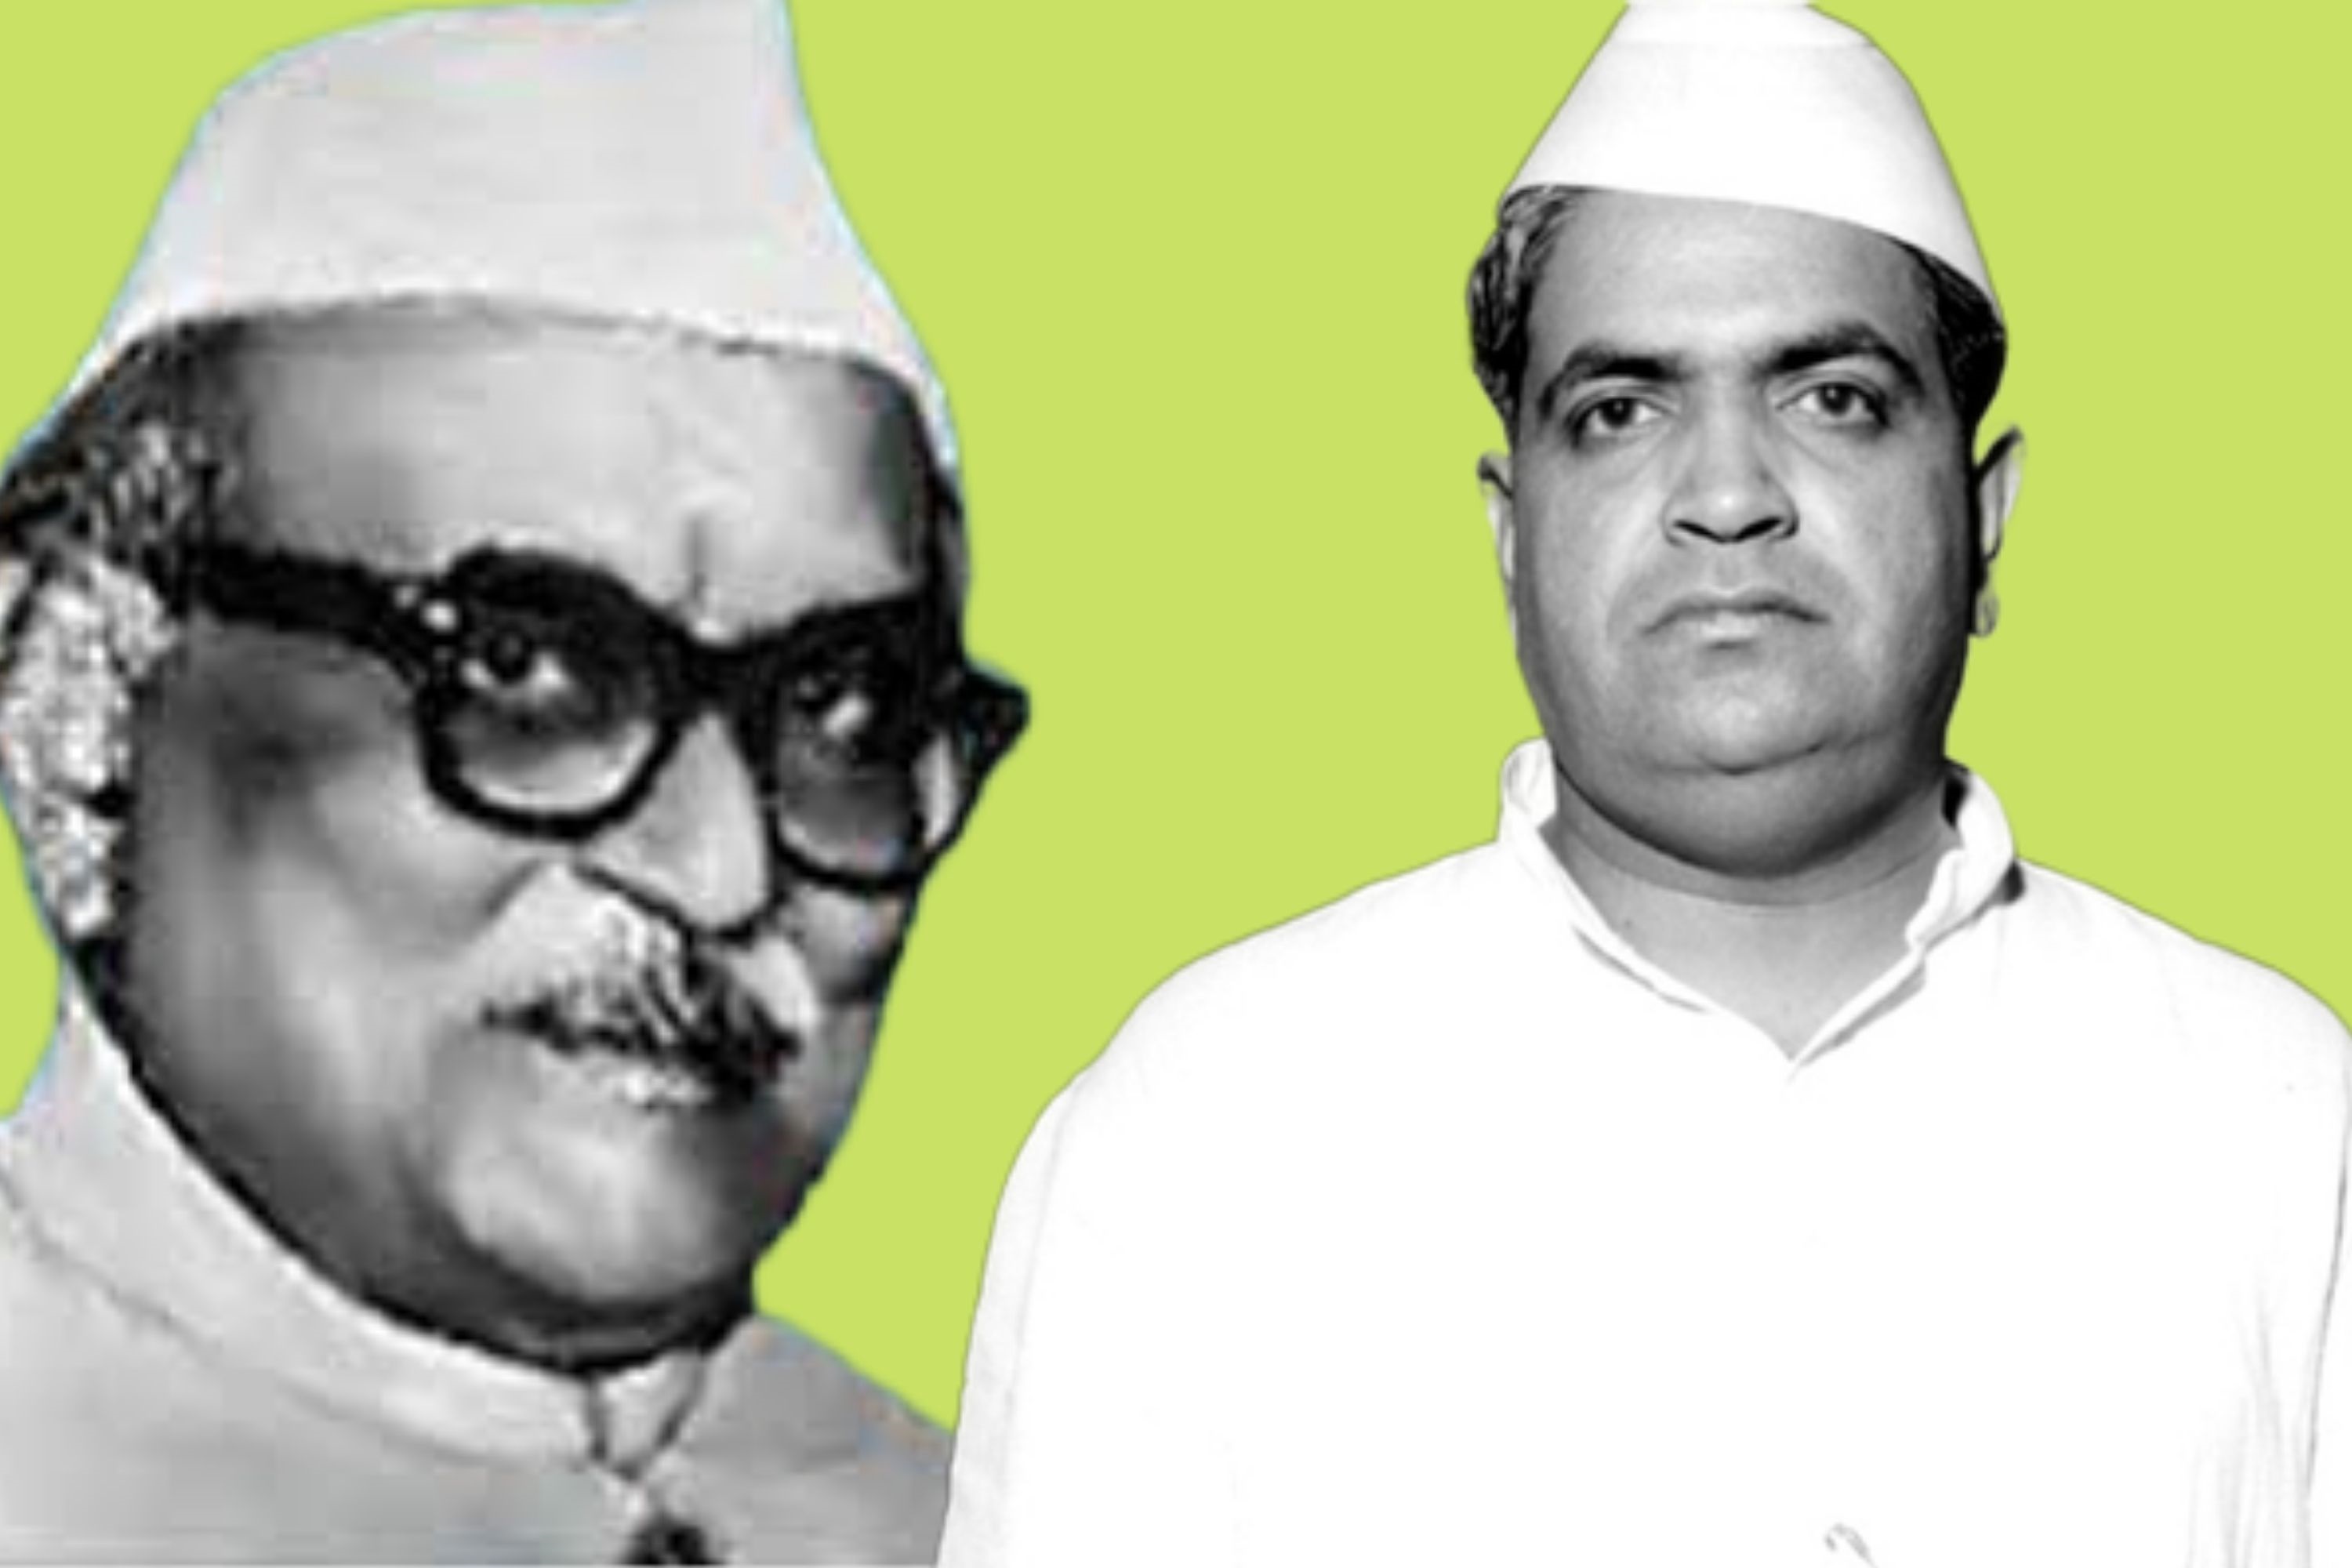 यूपी के पूर्व मुख्यमंत्री संपूर्णानंद और राजस्थान के सीएम मोहनलाल सुखाड़िया